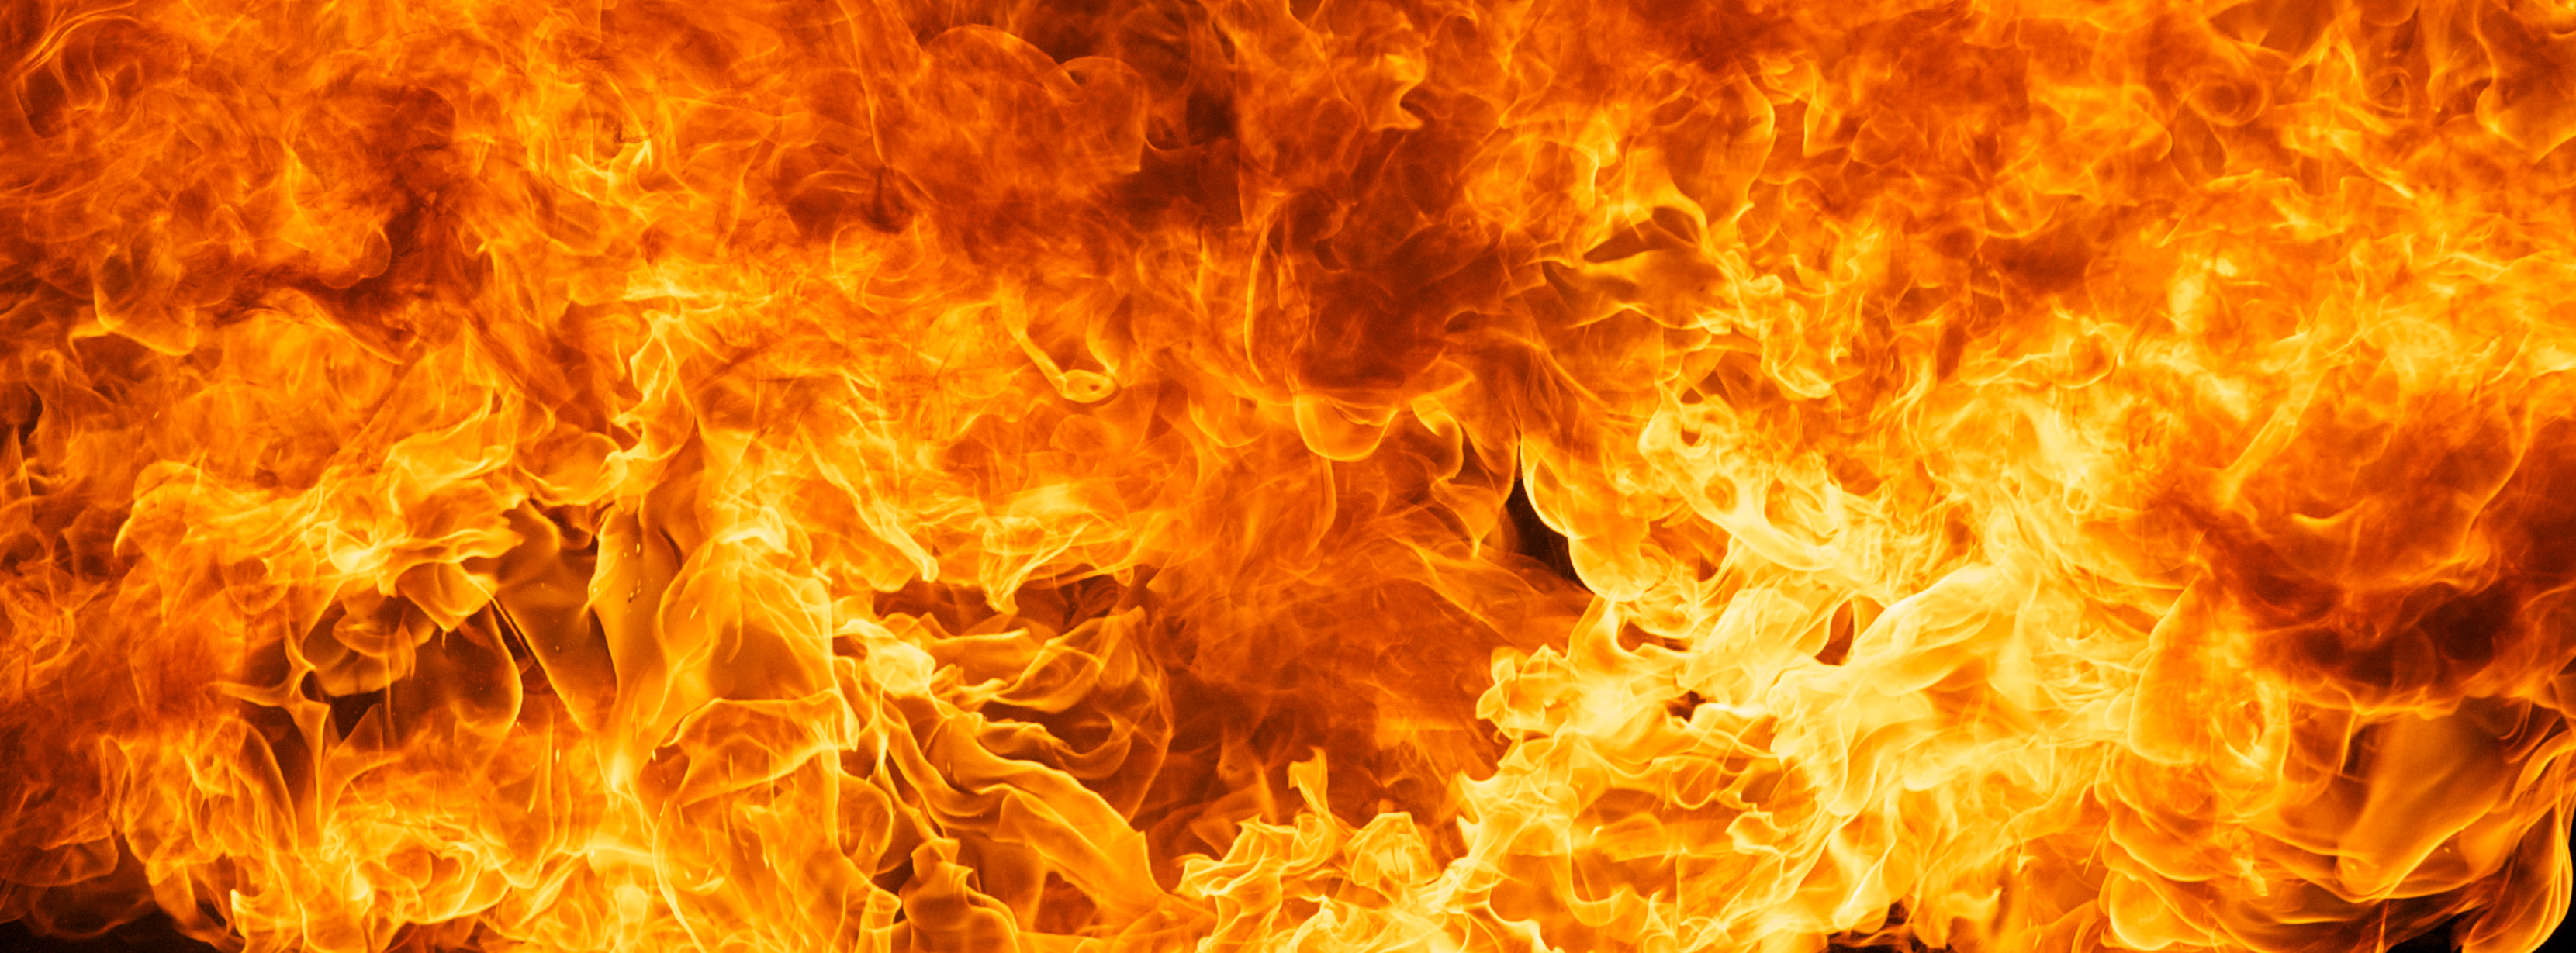 Un feu survient lorsque se produit une réaction d’oxydoréduction rapide. © flukesamed, Adobe Stock